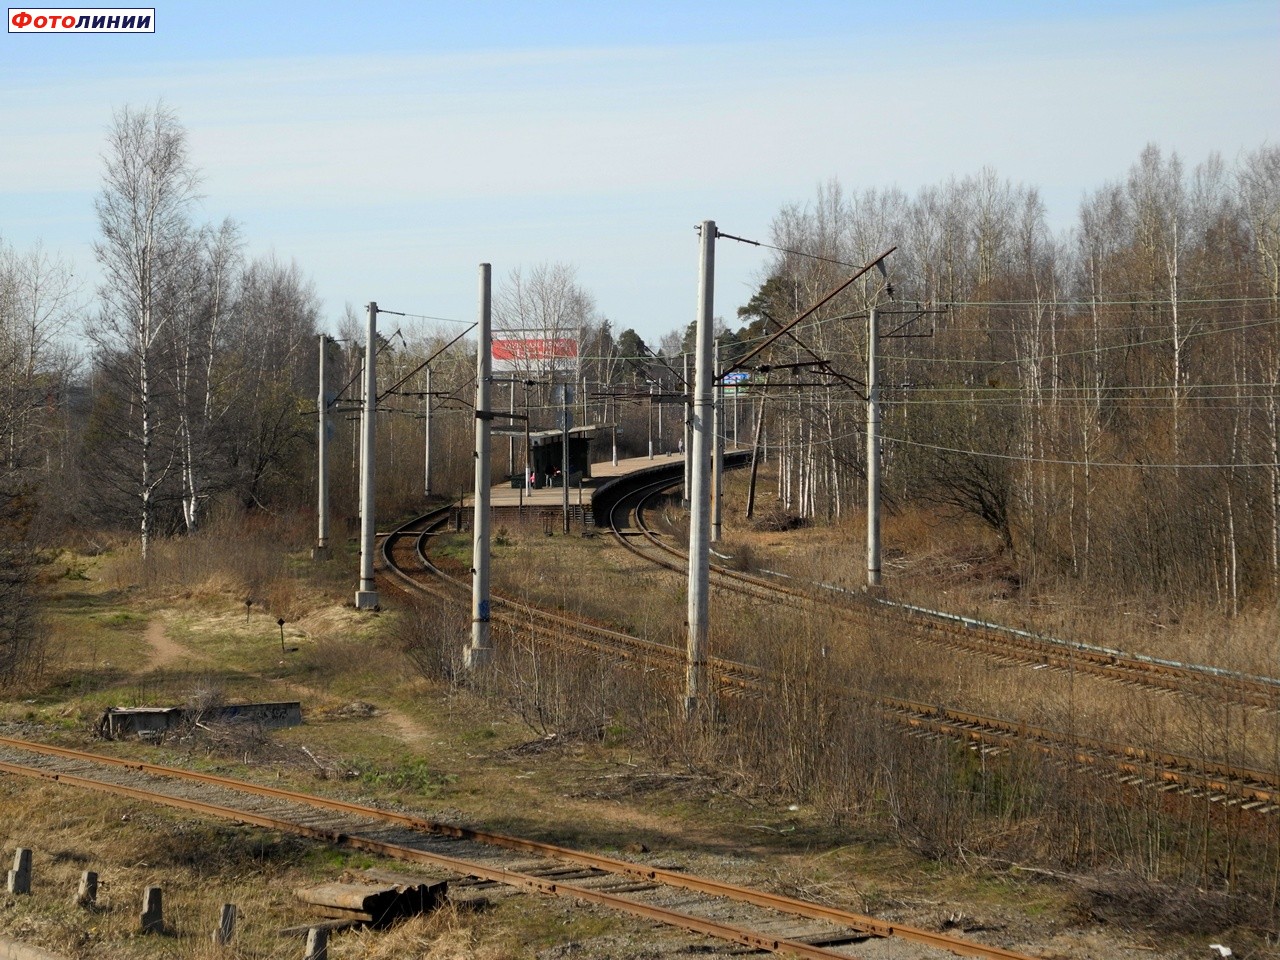 Вид на пассажирскую часть станции с Приморского шоссе со стороны Лахты